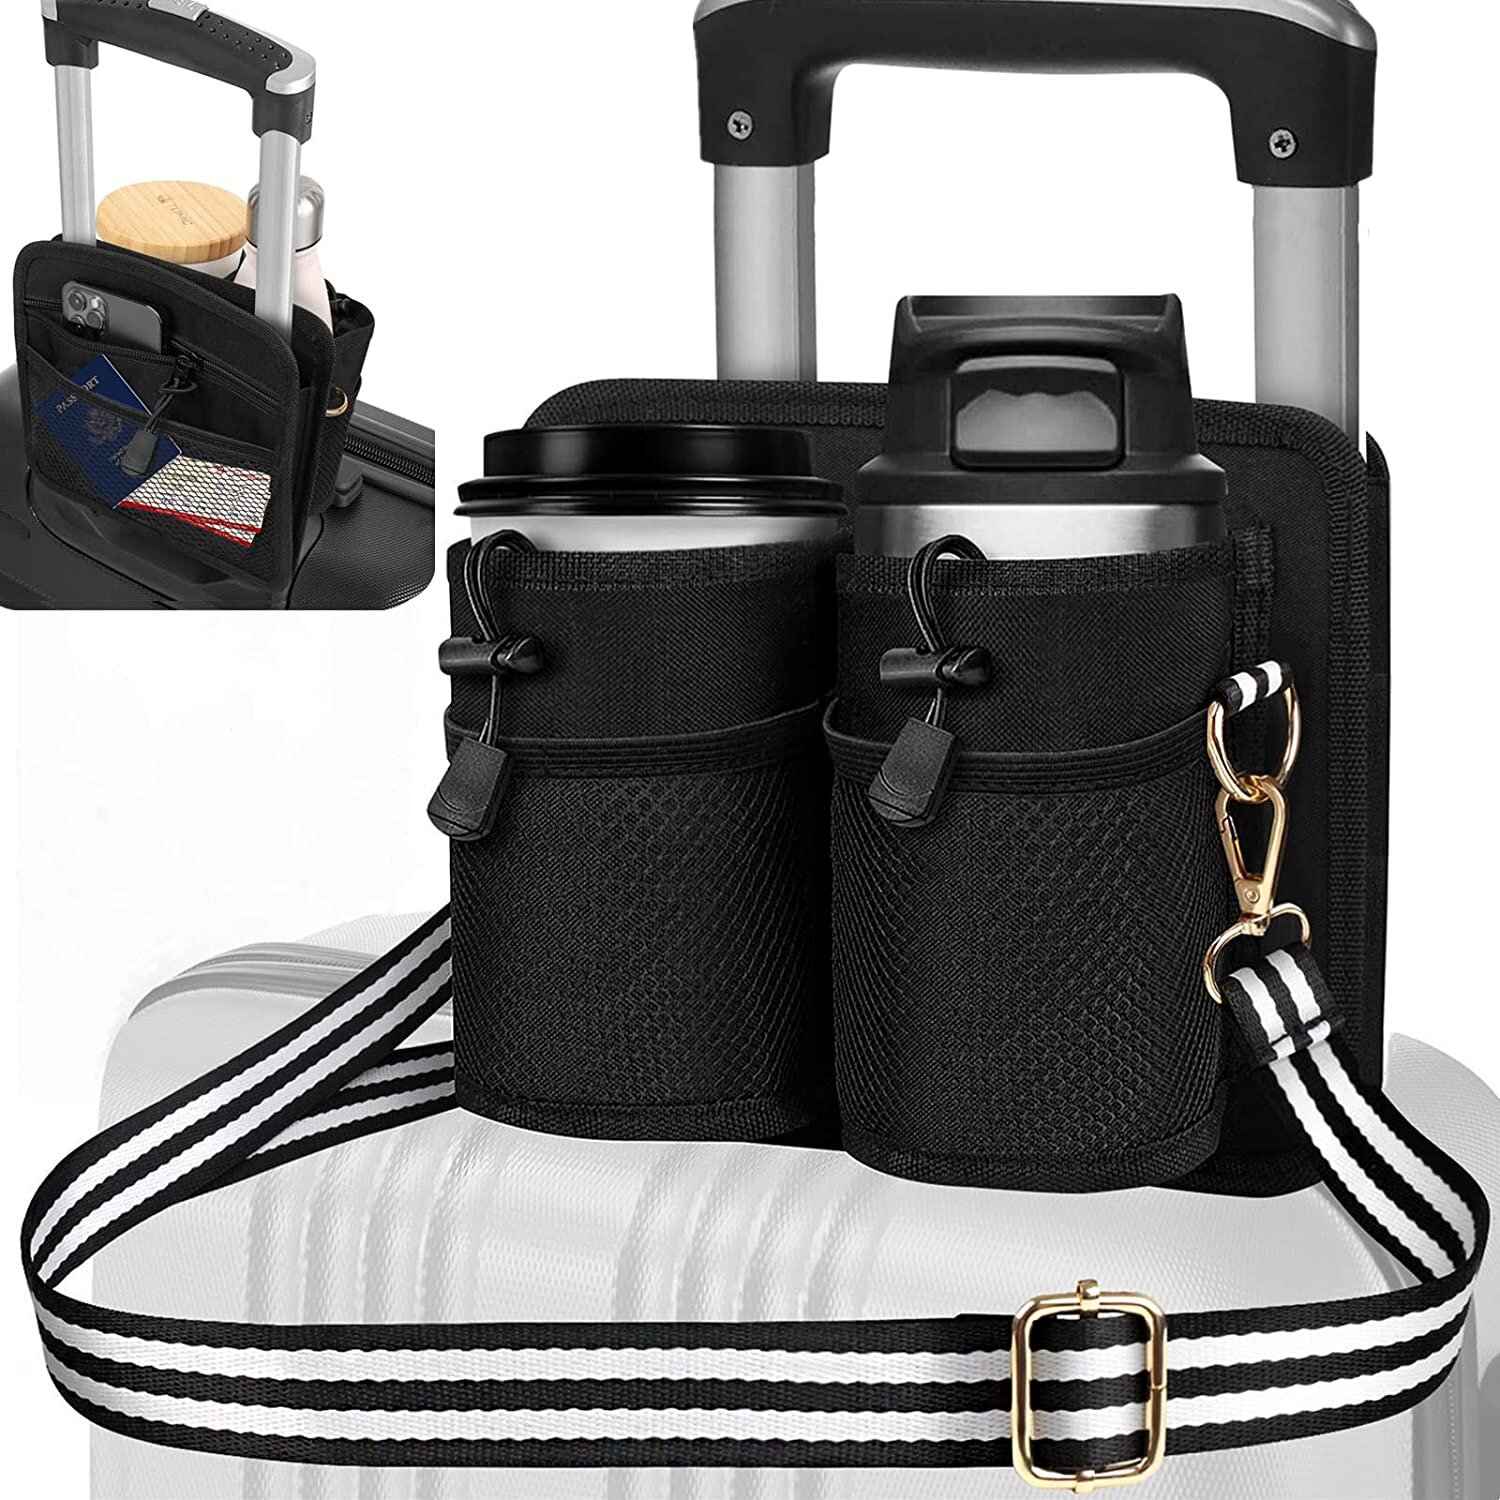 Luggage Cup Holder Bag with Shoulder Strap, Luggage Travel Cup Holder, Travel Drink Suitcase Luggage Holder, Zipper Pock